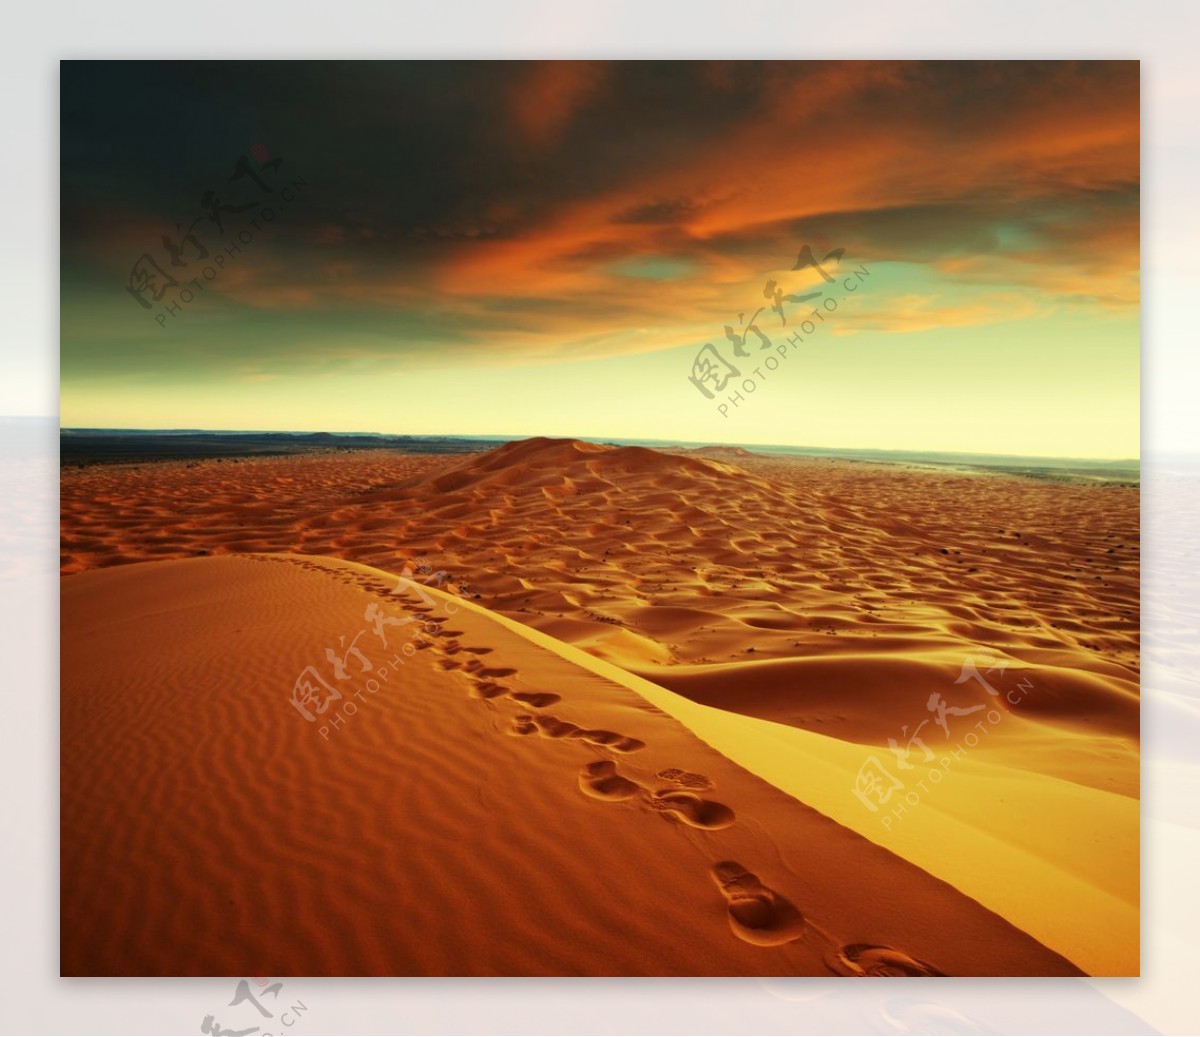 沙漠黄昏景色